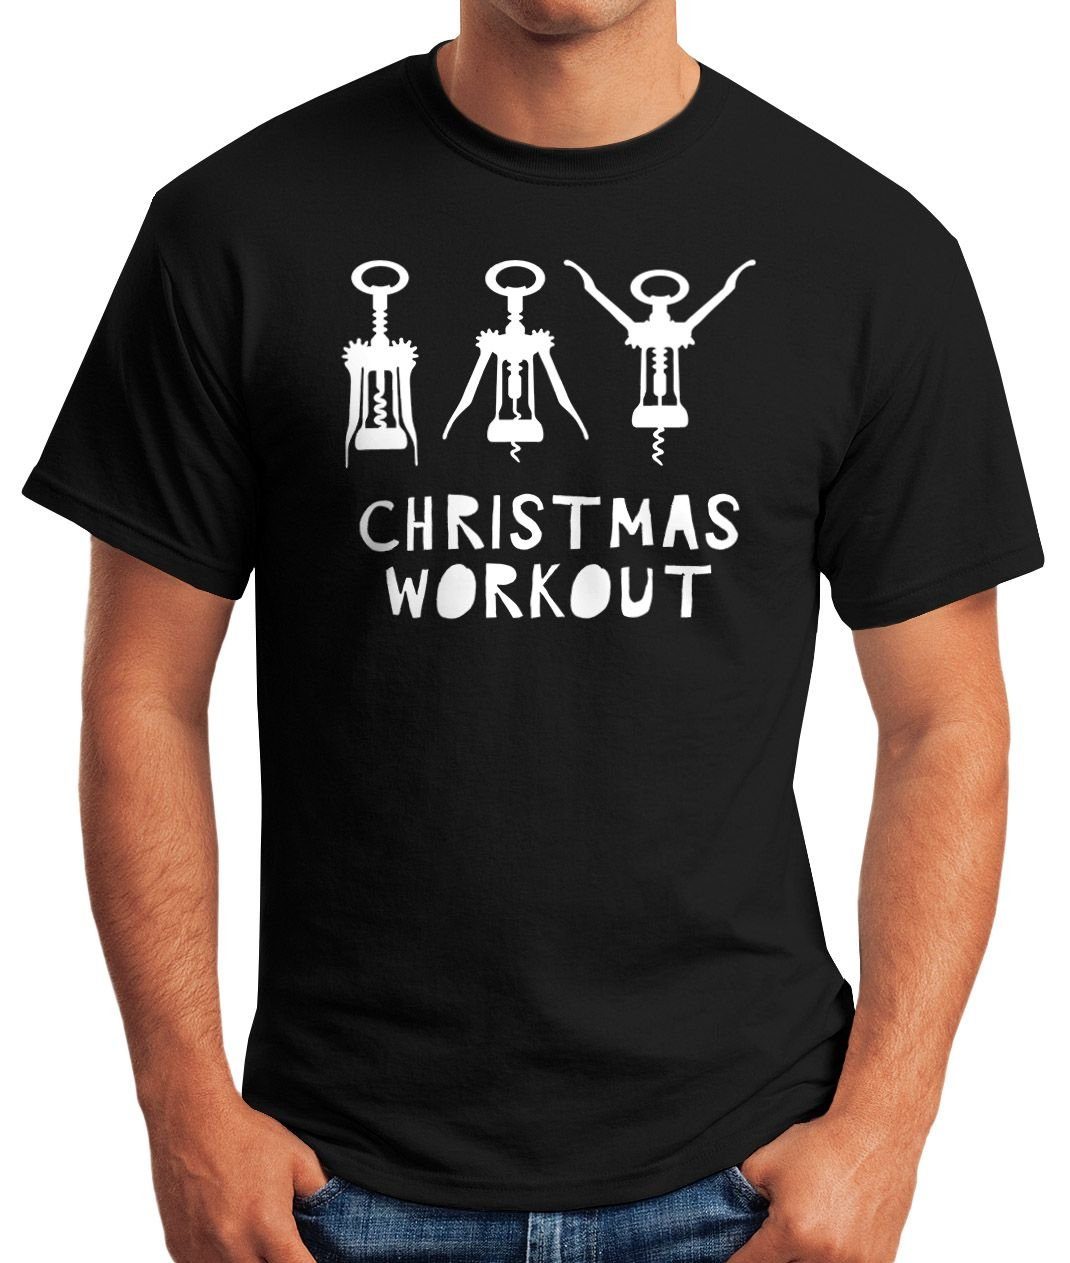 Moonworks® Herren Print-Shirt lustig mit Print Korkenzieher Workout Flaschenöffner Wein Weihnachten MoonWorks T-Shirt Christmas trinken Fun-Shirt schwarz